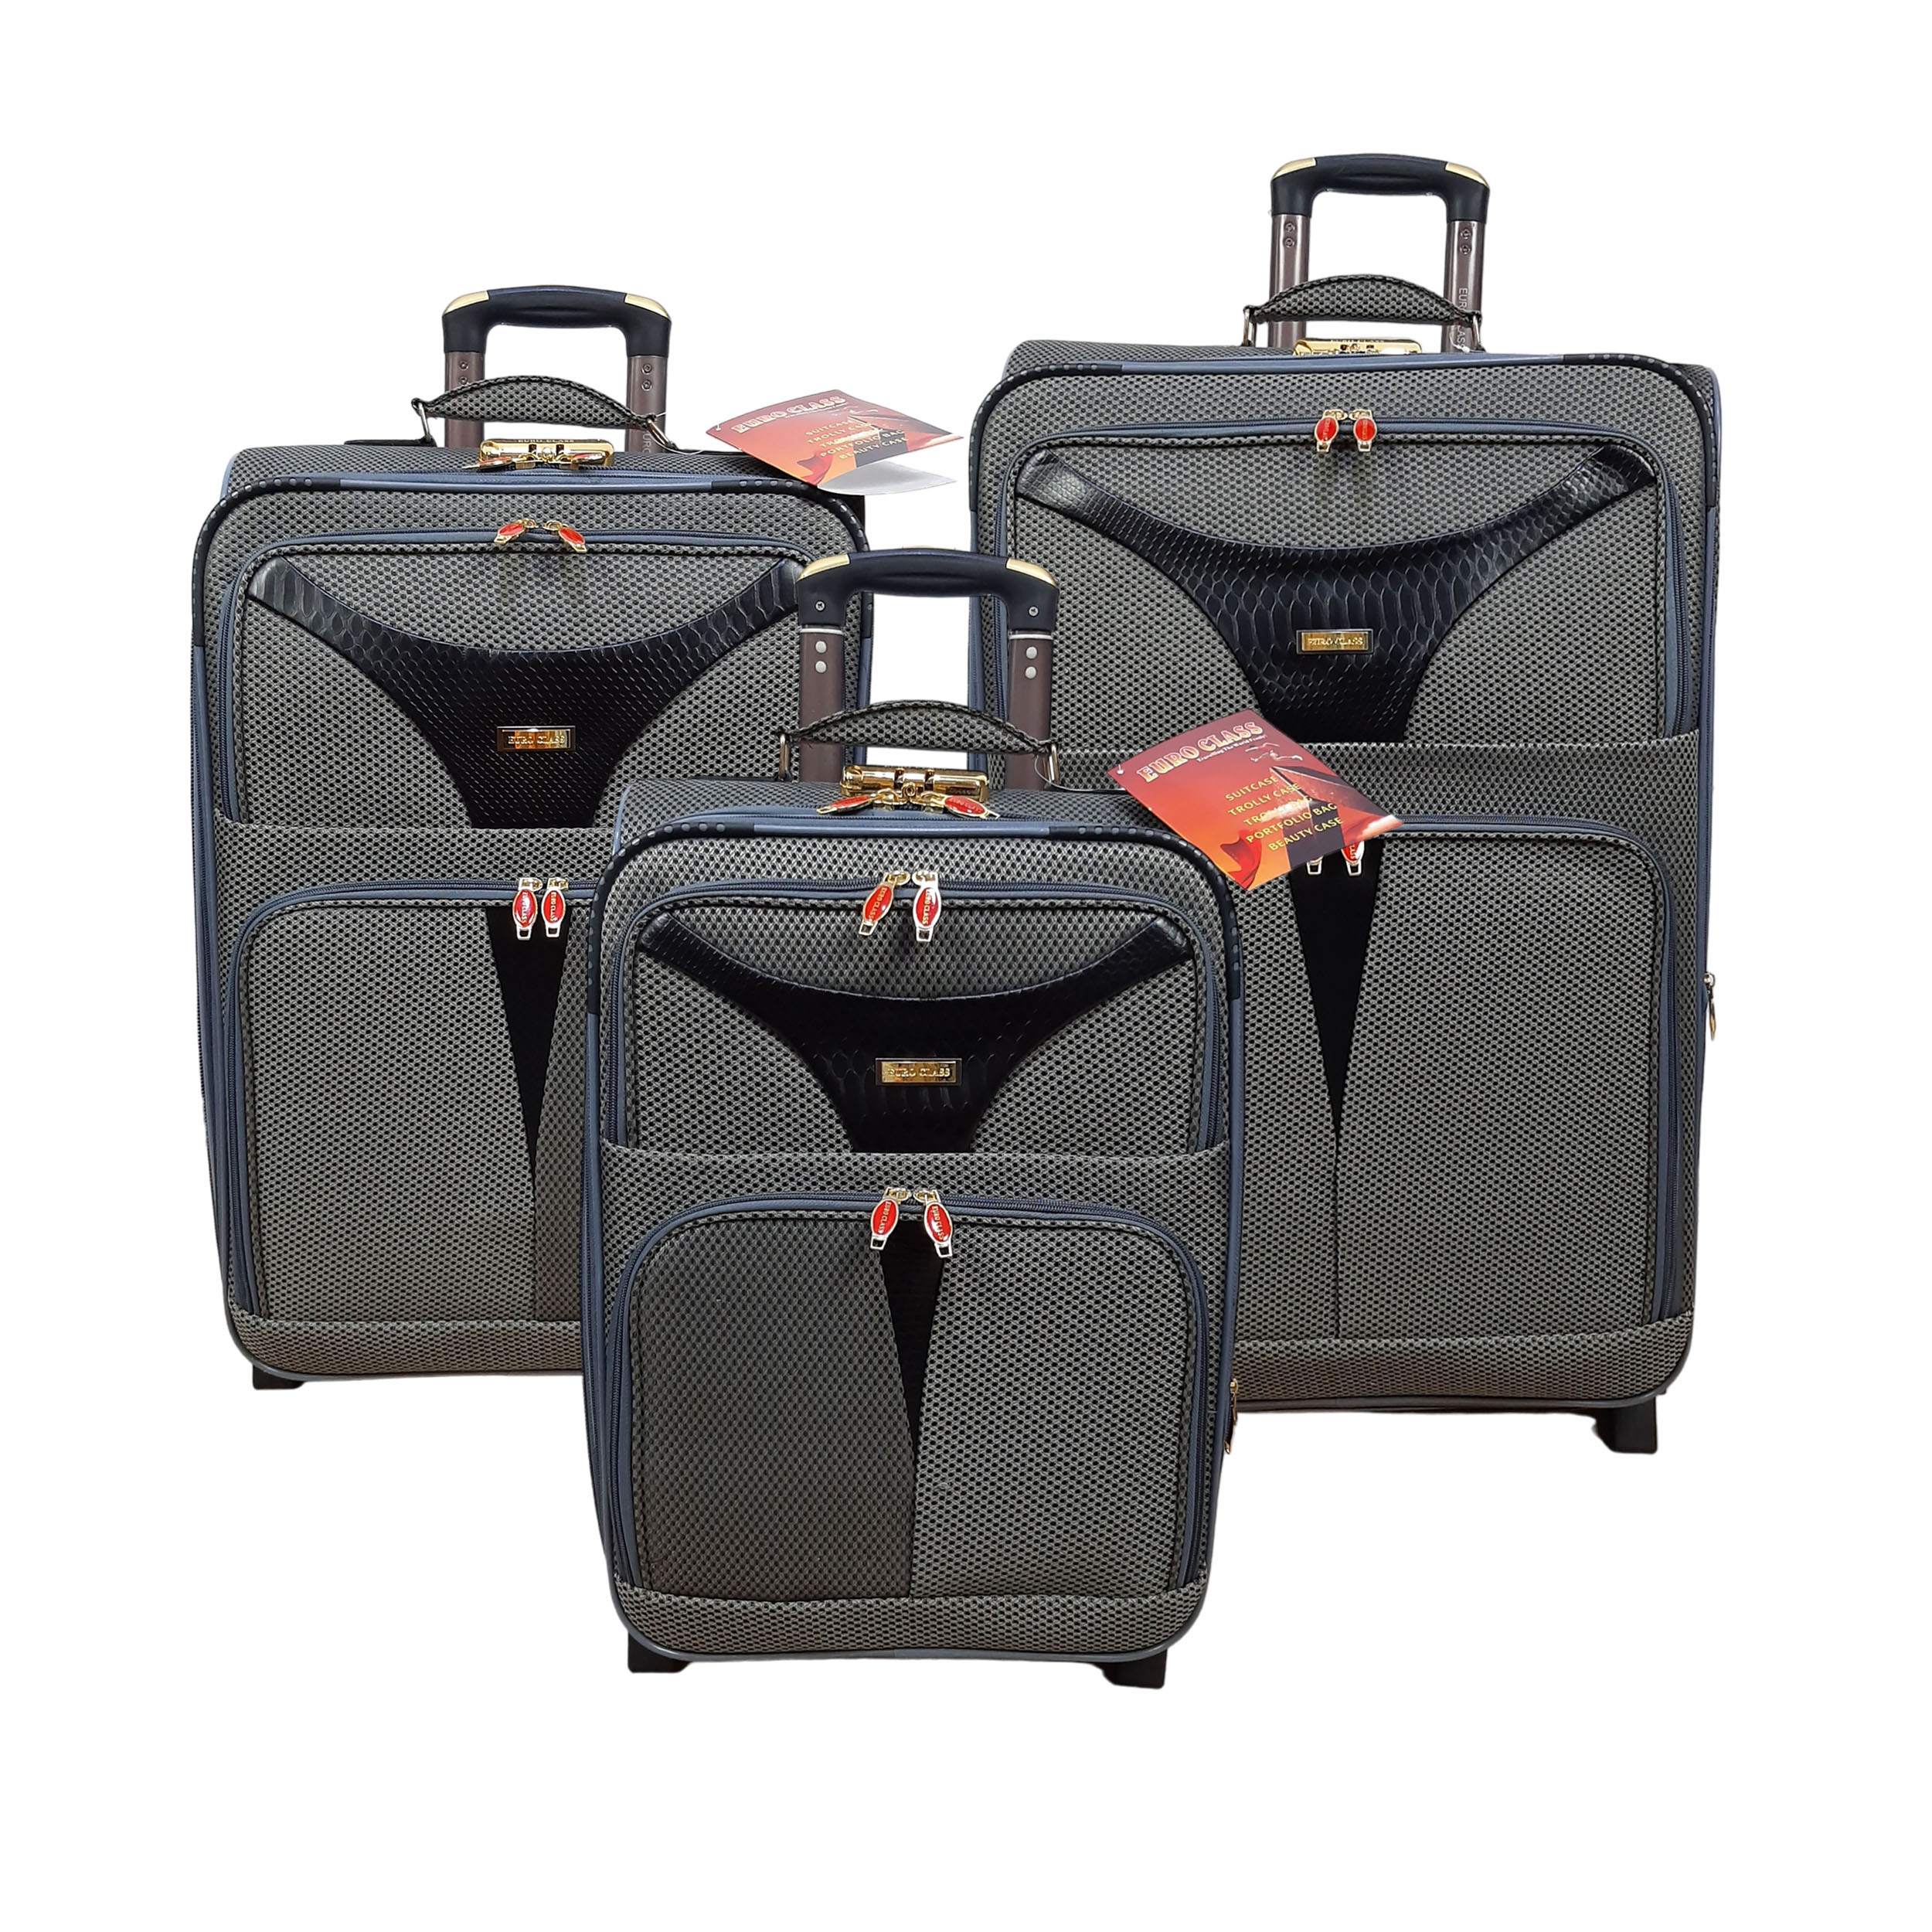 نکته خرید - قیمت روز مجموعه سه عددی چمدان یورو کلاس مدل T9050 خرید